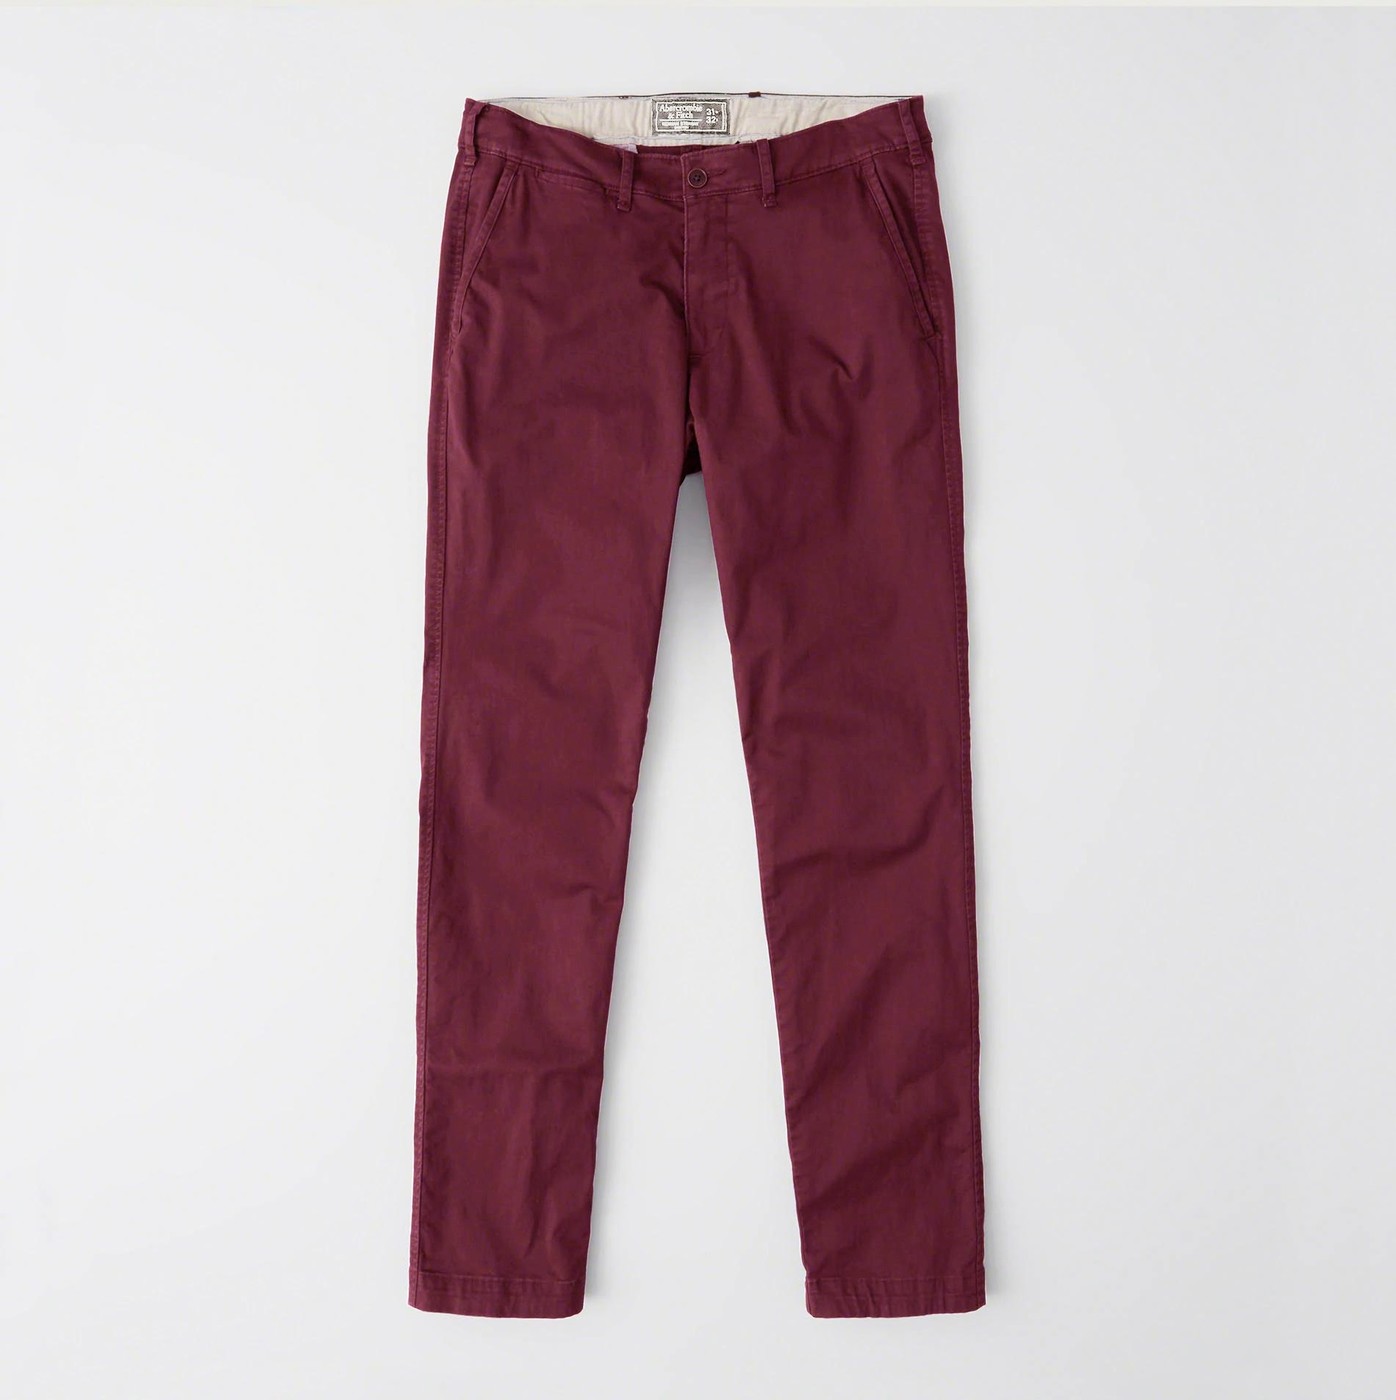 Брюки мужские - брюки Skinny Chino Abercrombie & Fitch, 32/32, 32/32